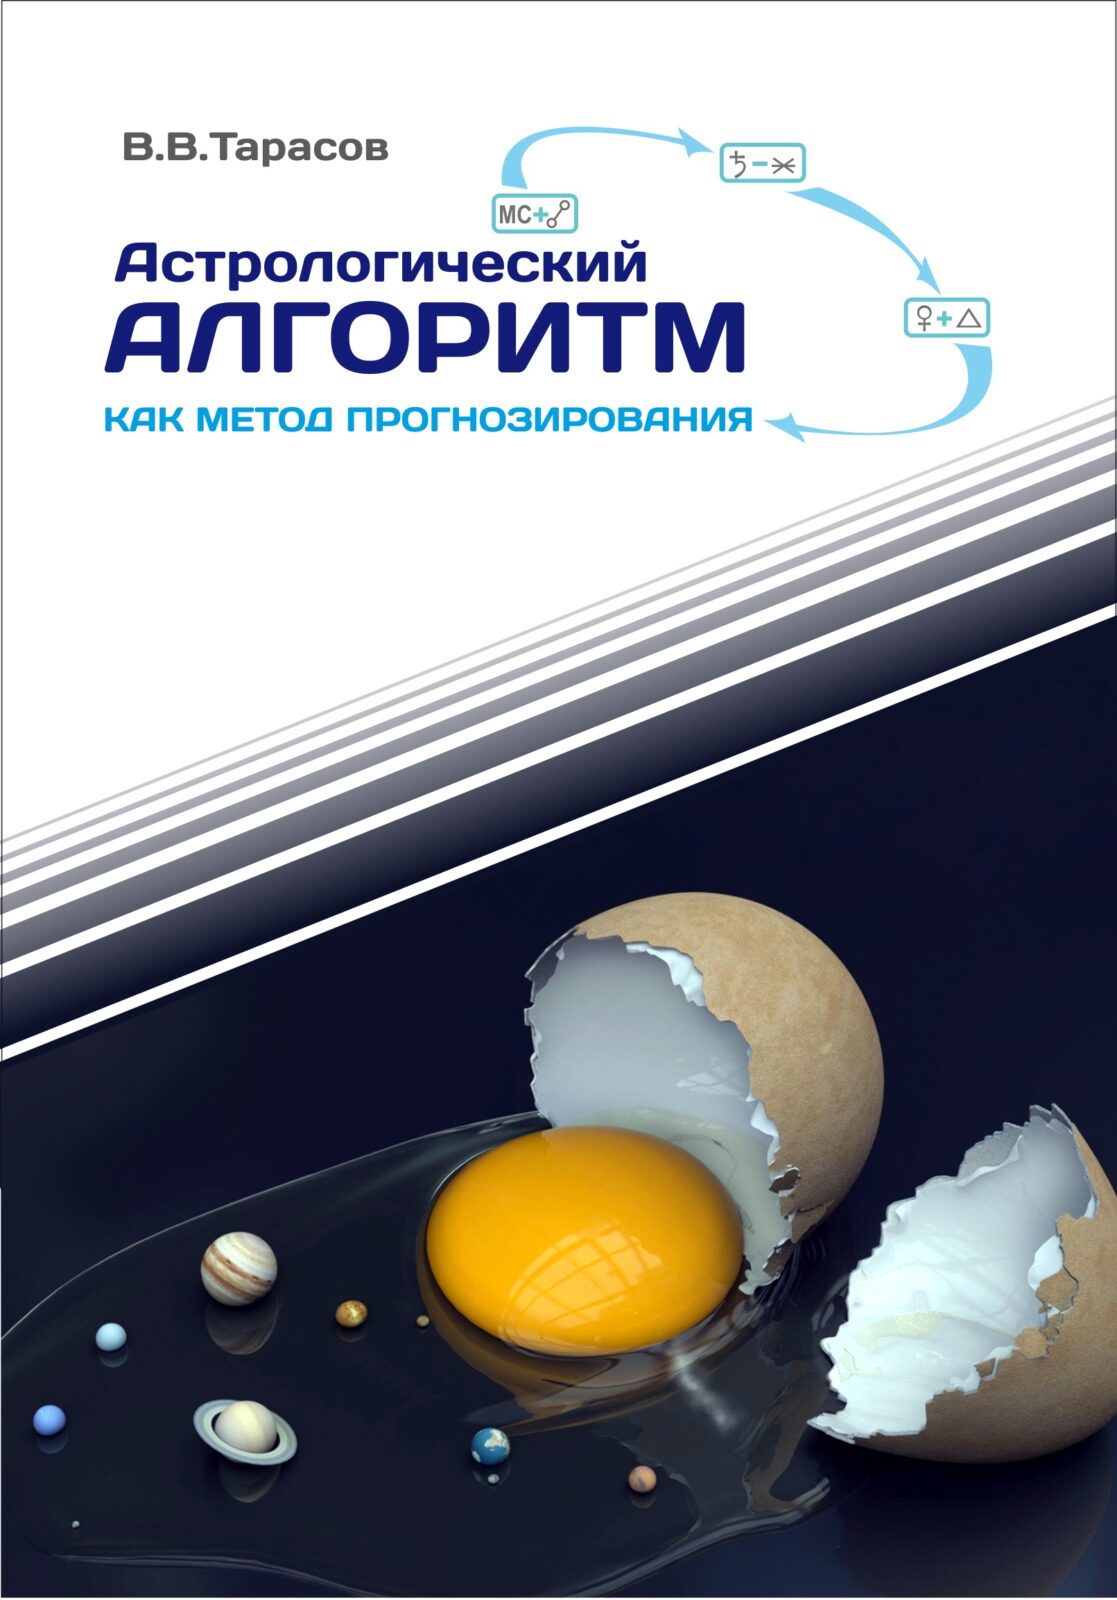 tarasov book 1.jpg - Программа для профессиональных астрологов - ZEUS - AstroZeus